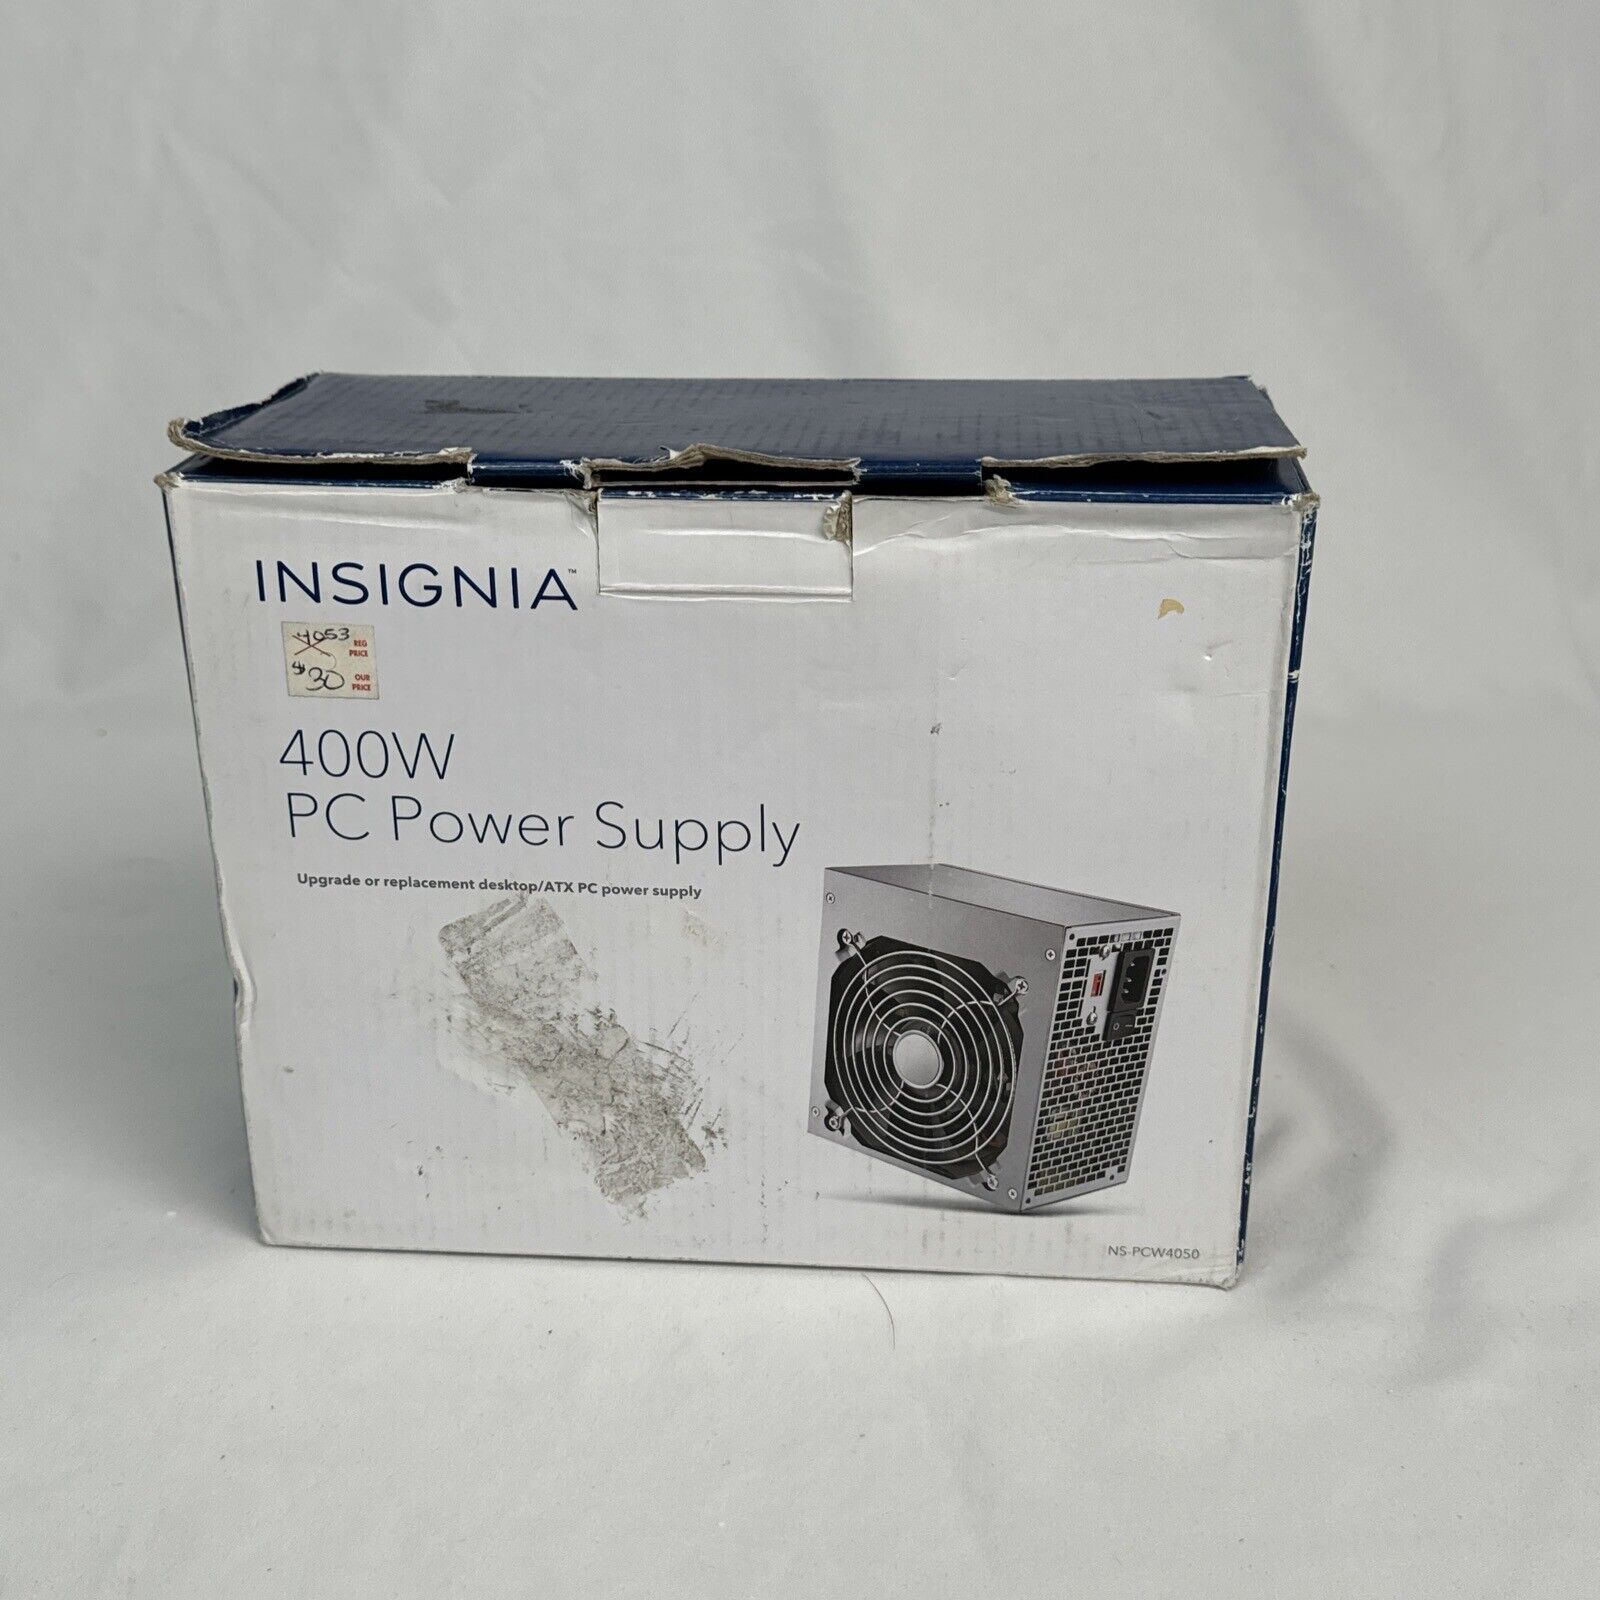 Insignia 400W ATX PC Power Supply NS-PCW4050